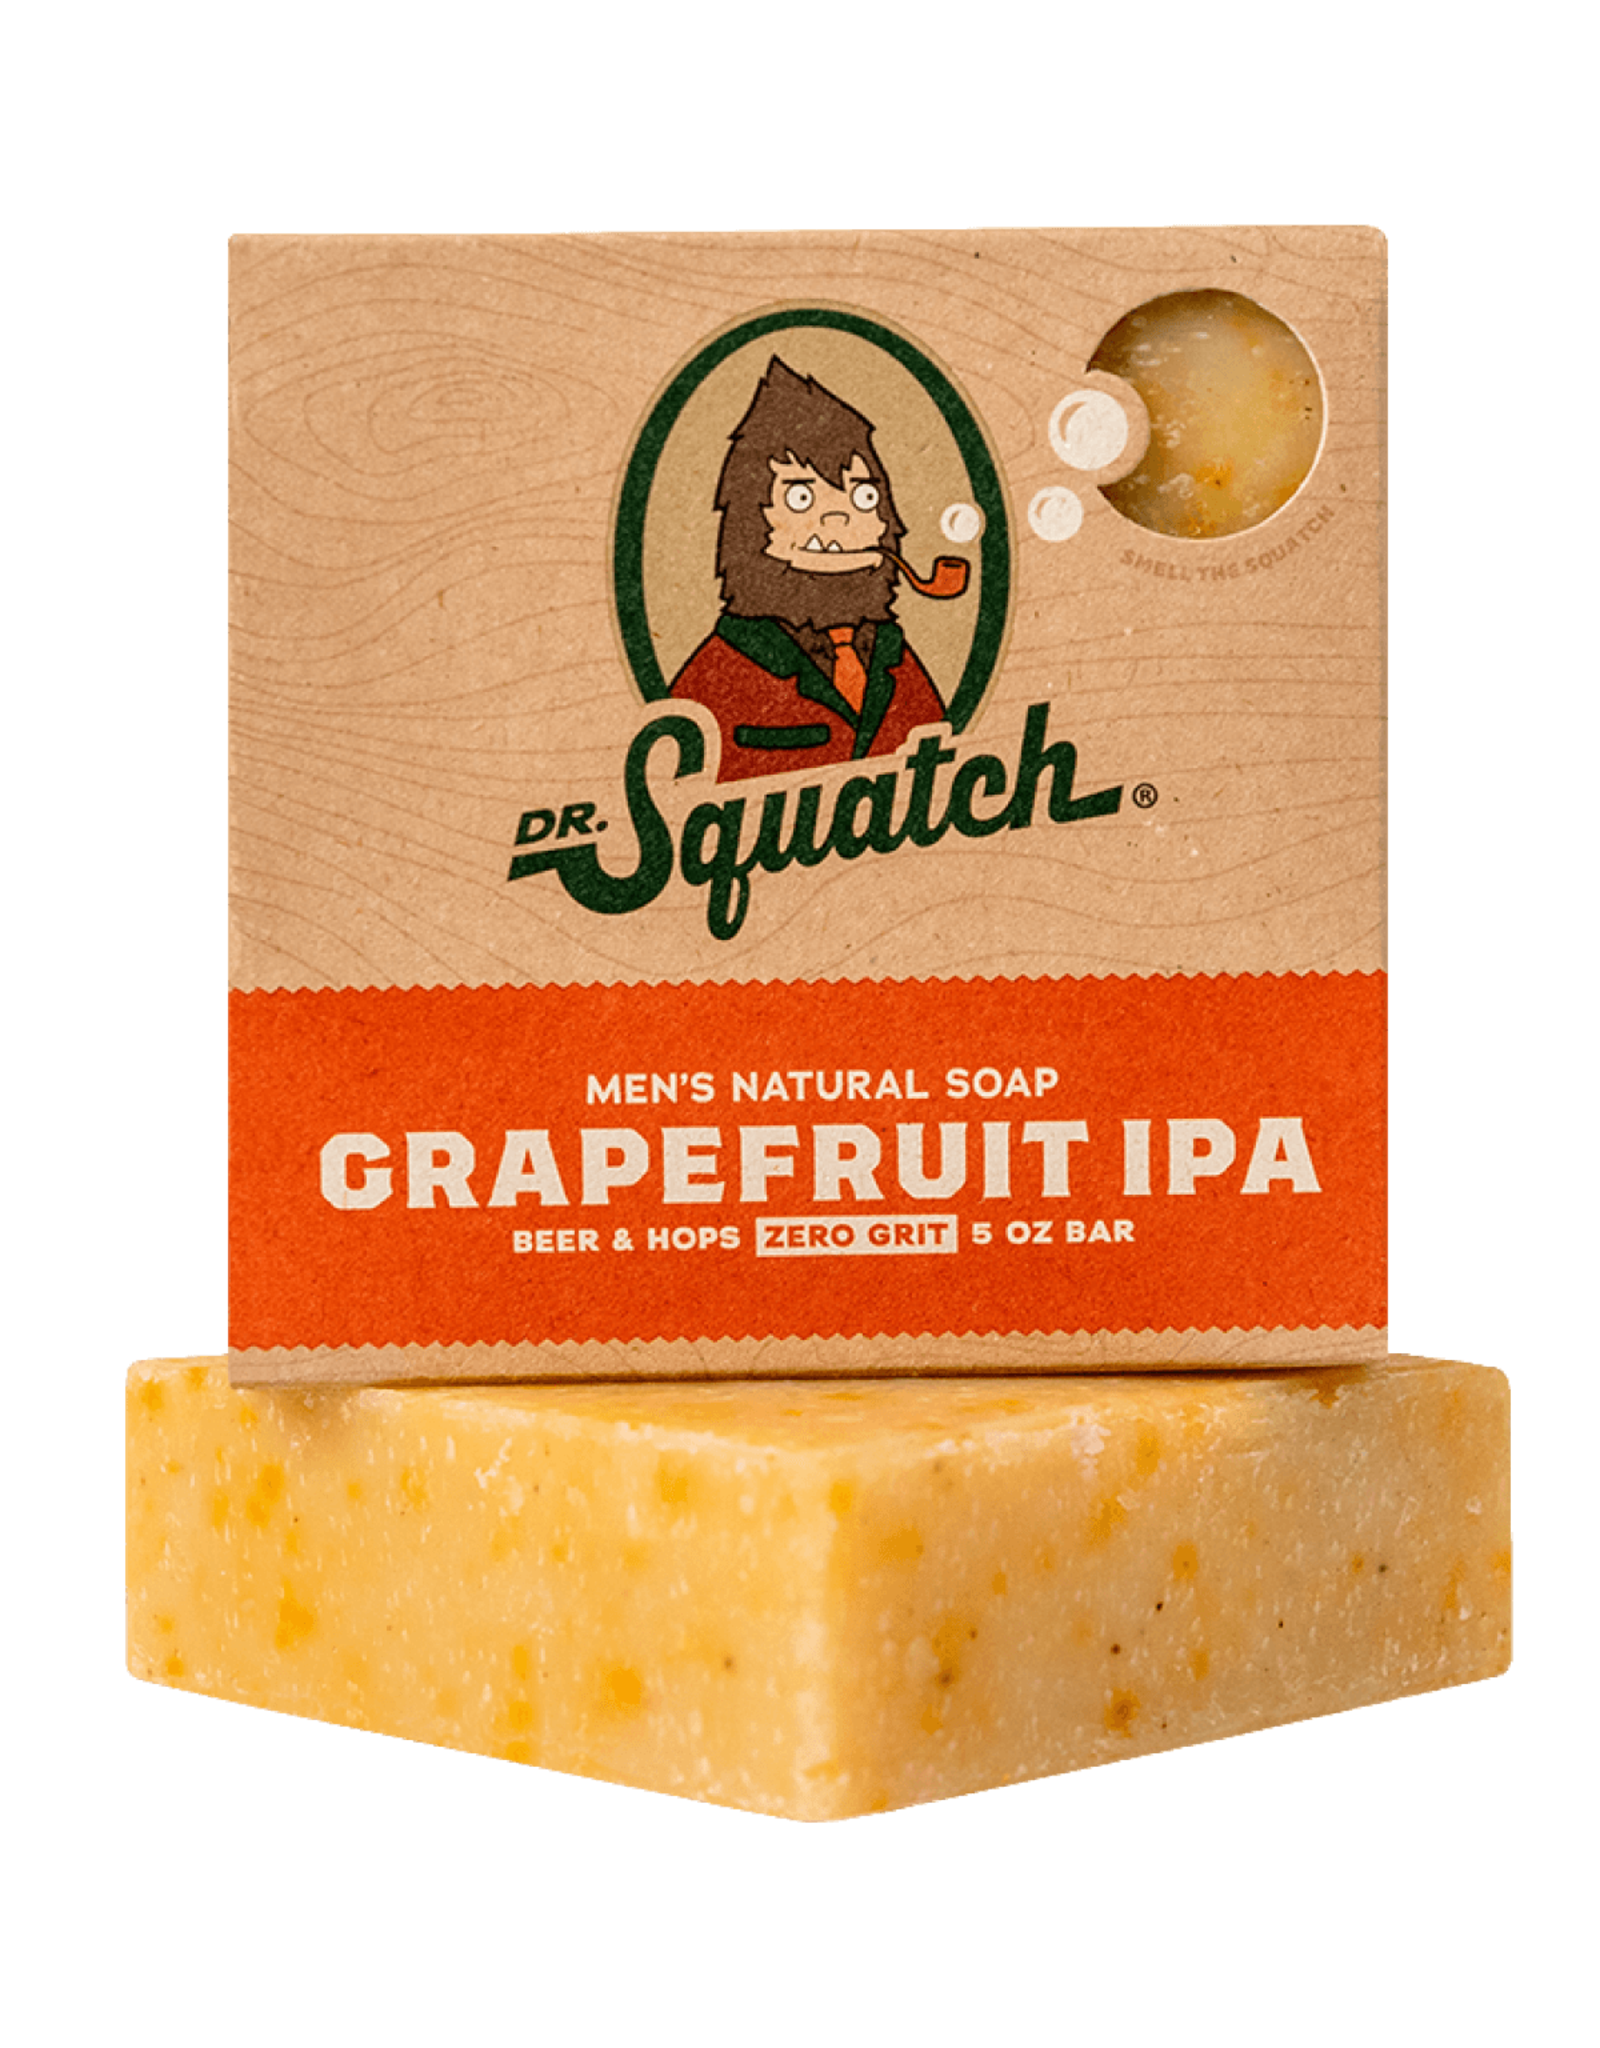 Dr. Squatch Grapefruit IPA Soap